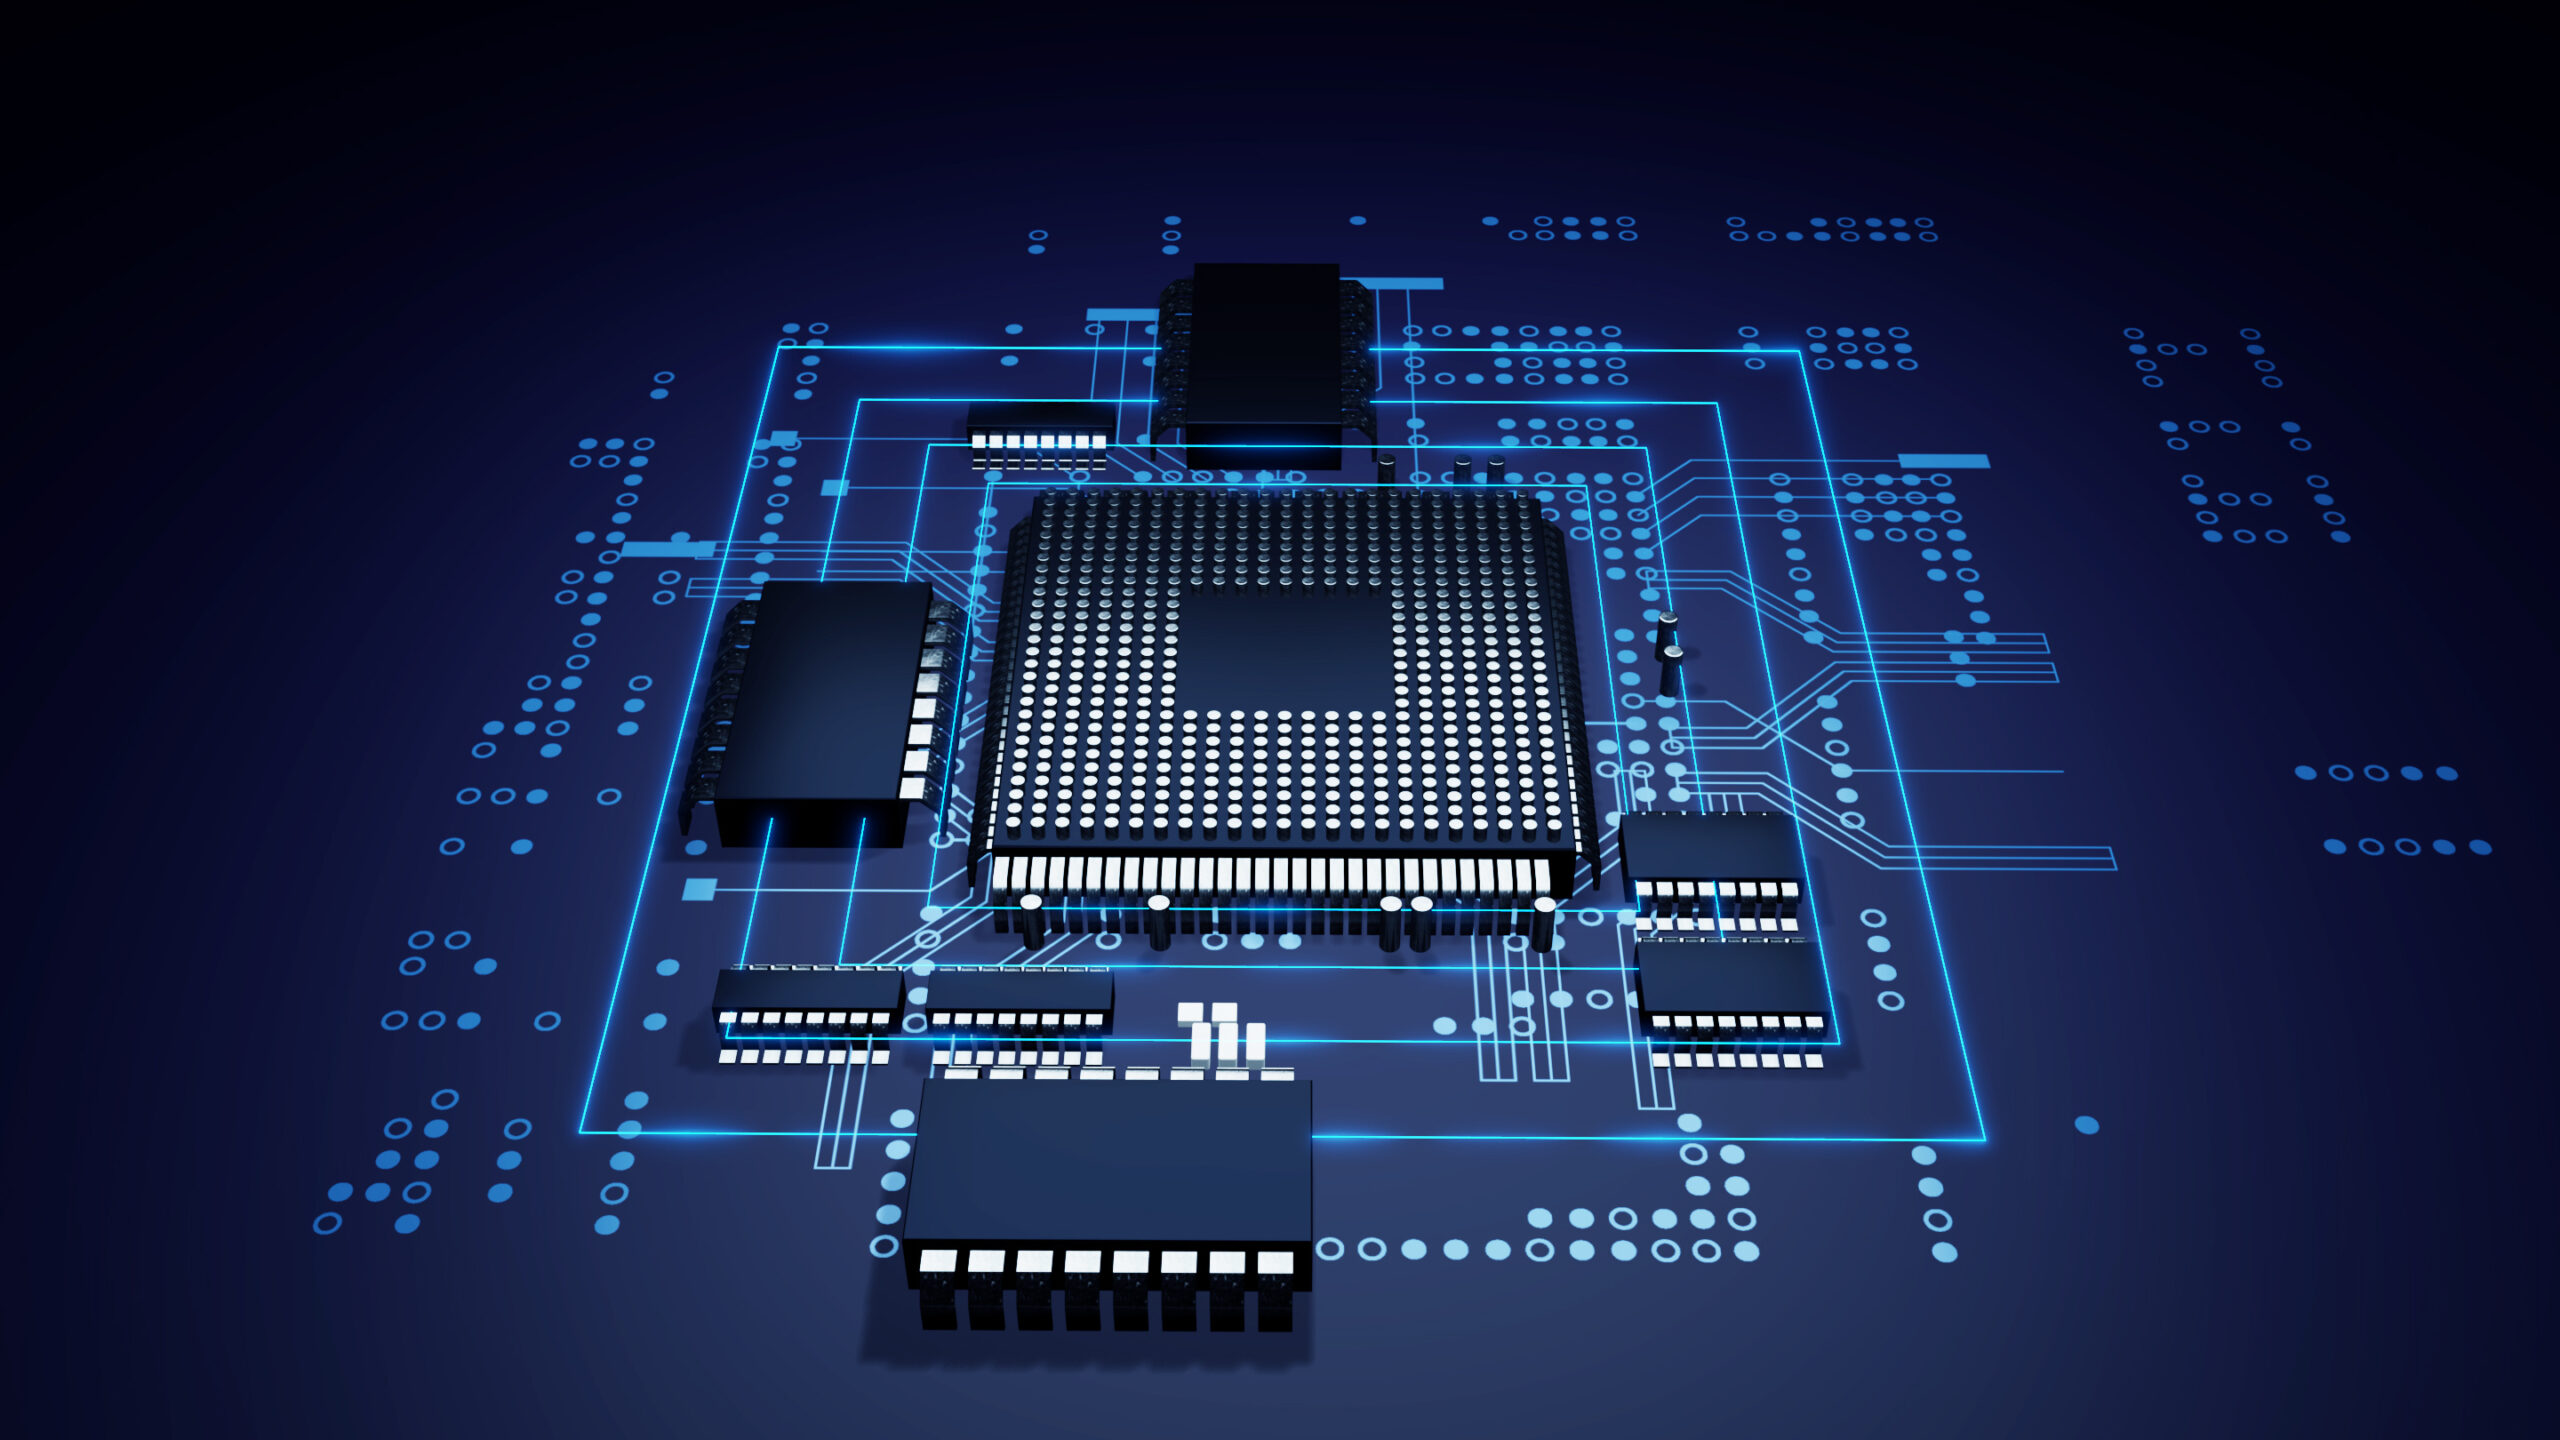 Fluxo automatizado de ferramentas a partir de linguagens específicas de domínio para gerar aceleradores massivamente paralelos em FPGAs equipados com HBM